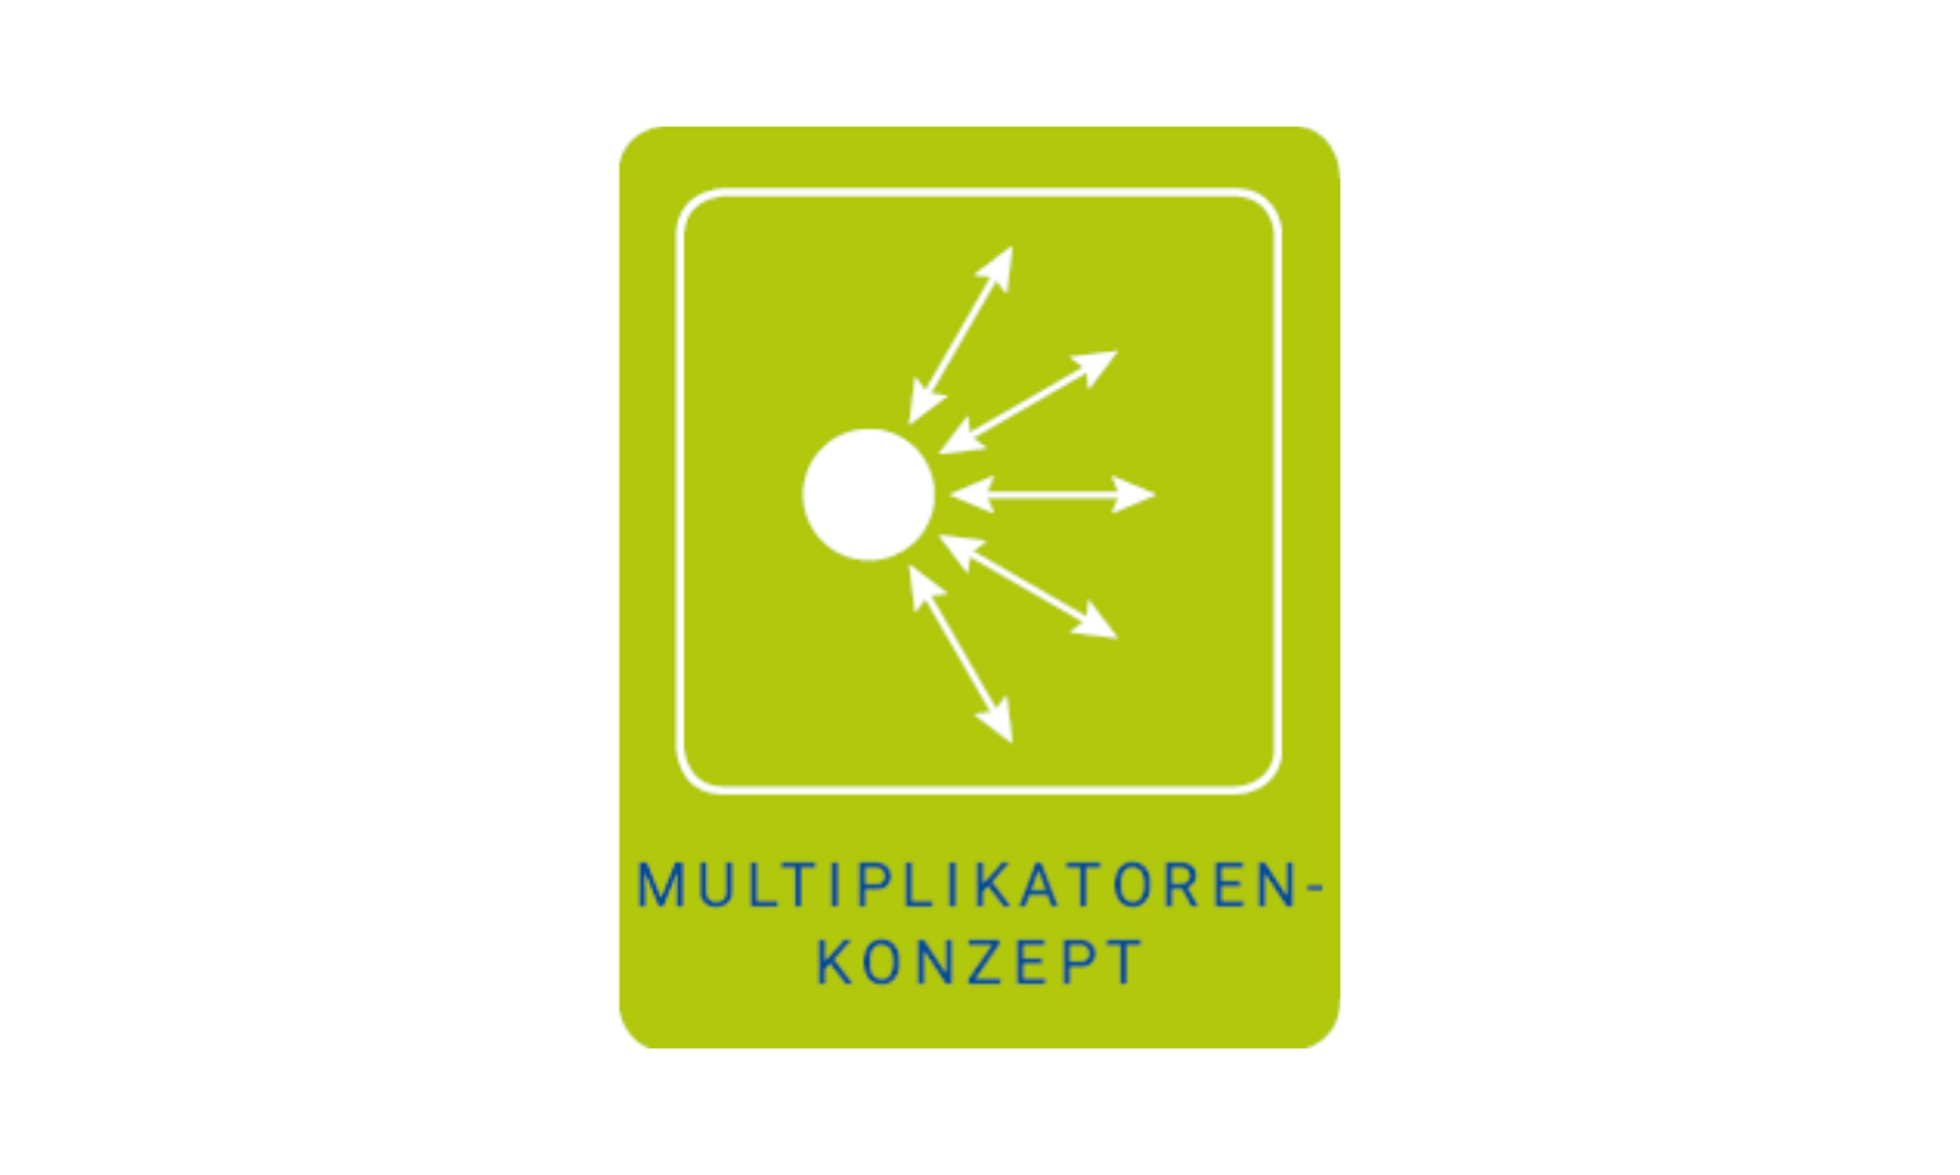 Logo Mulitplikatoren-Konzept: Kreis von dem mehrere Pfeile in unterschiedliche Richtungen ausgehen